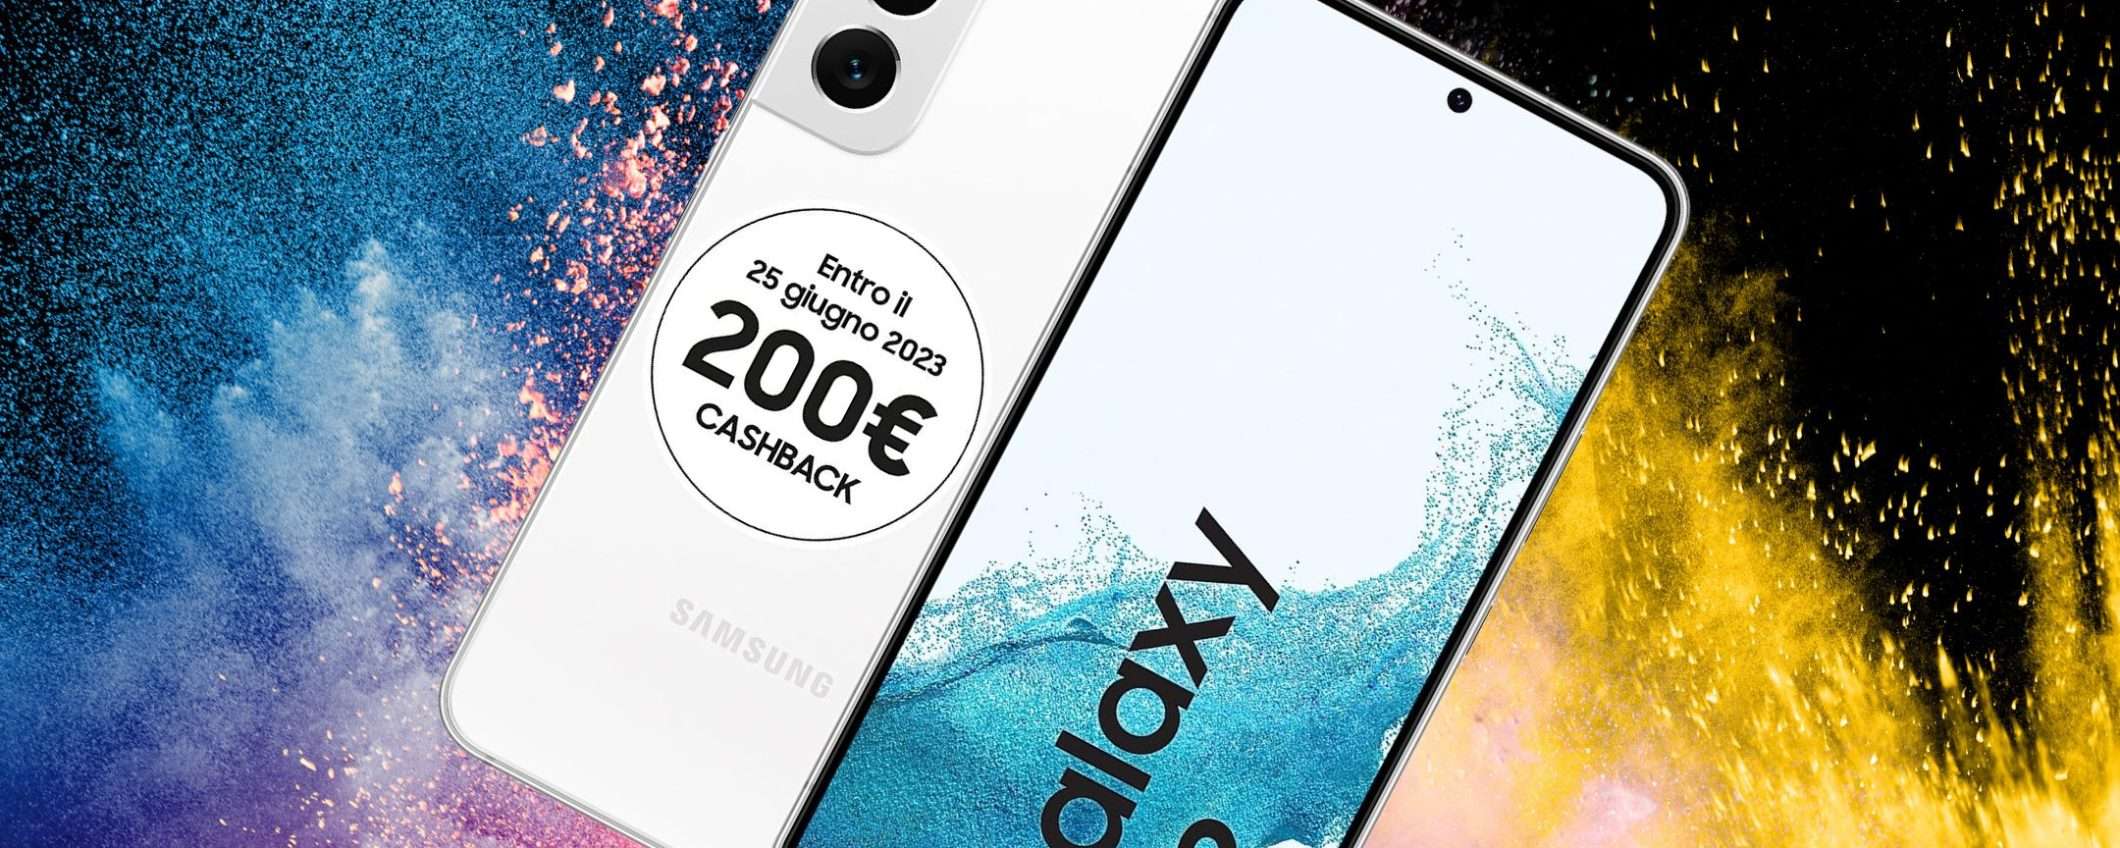 Samsung Galaxy S22 256GB a 429€ è un prezzo SCONSIDERATO (sconto di 500€)